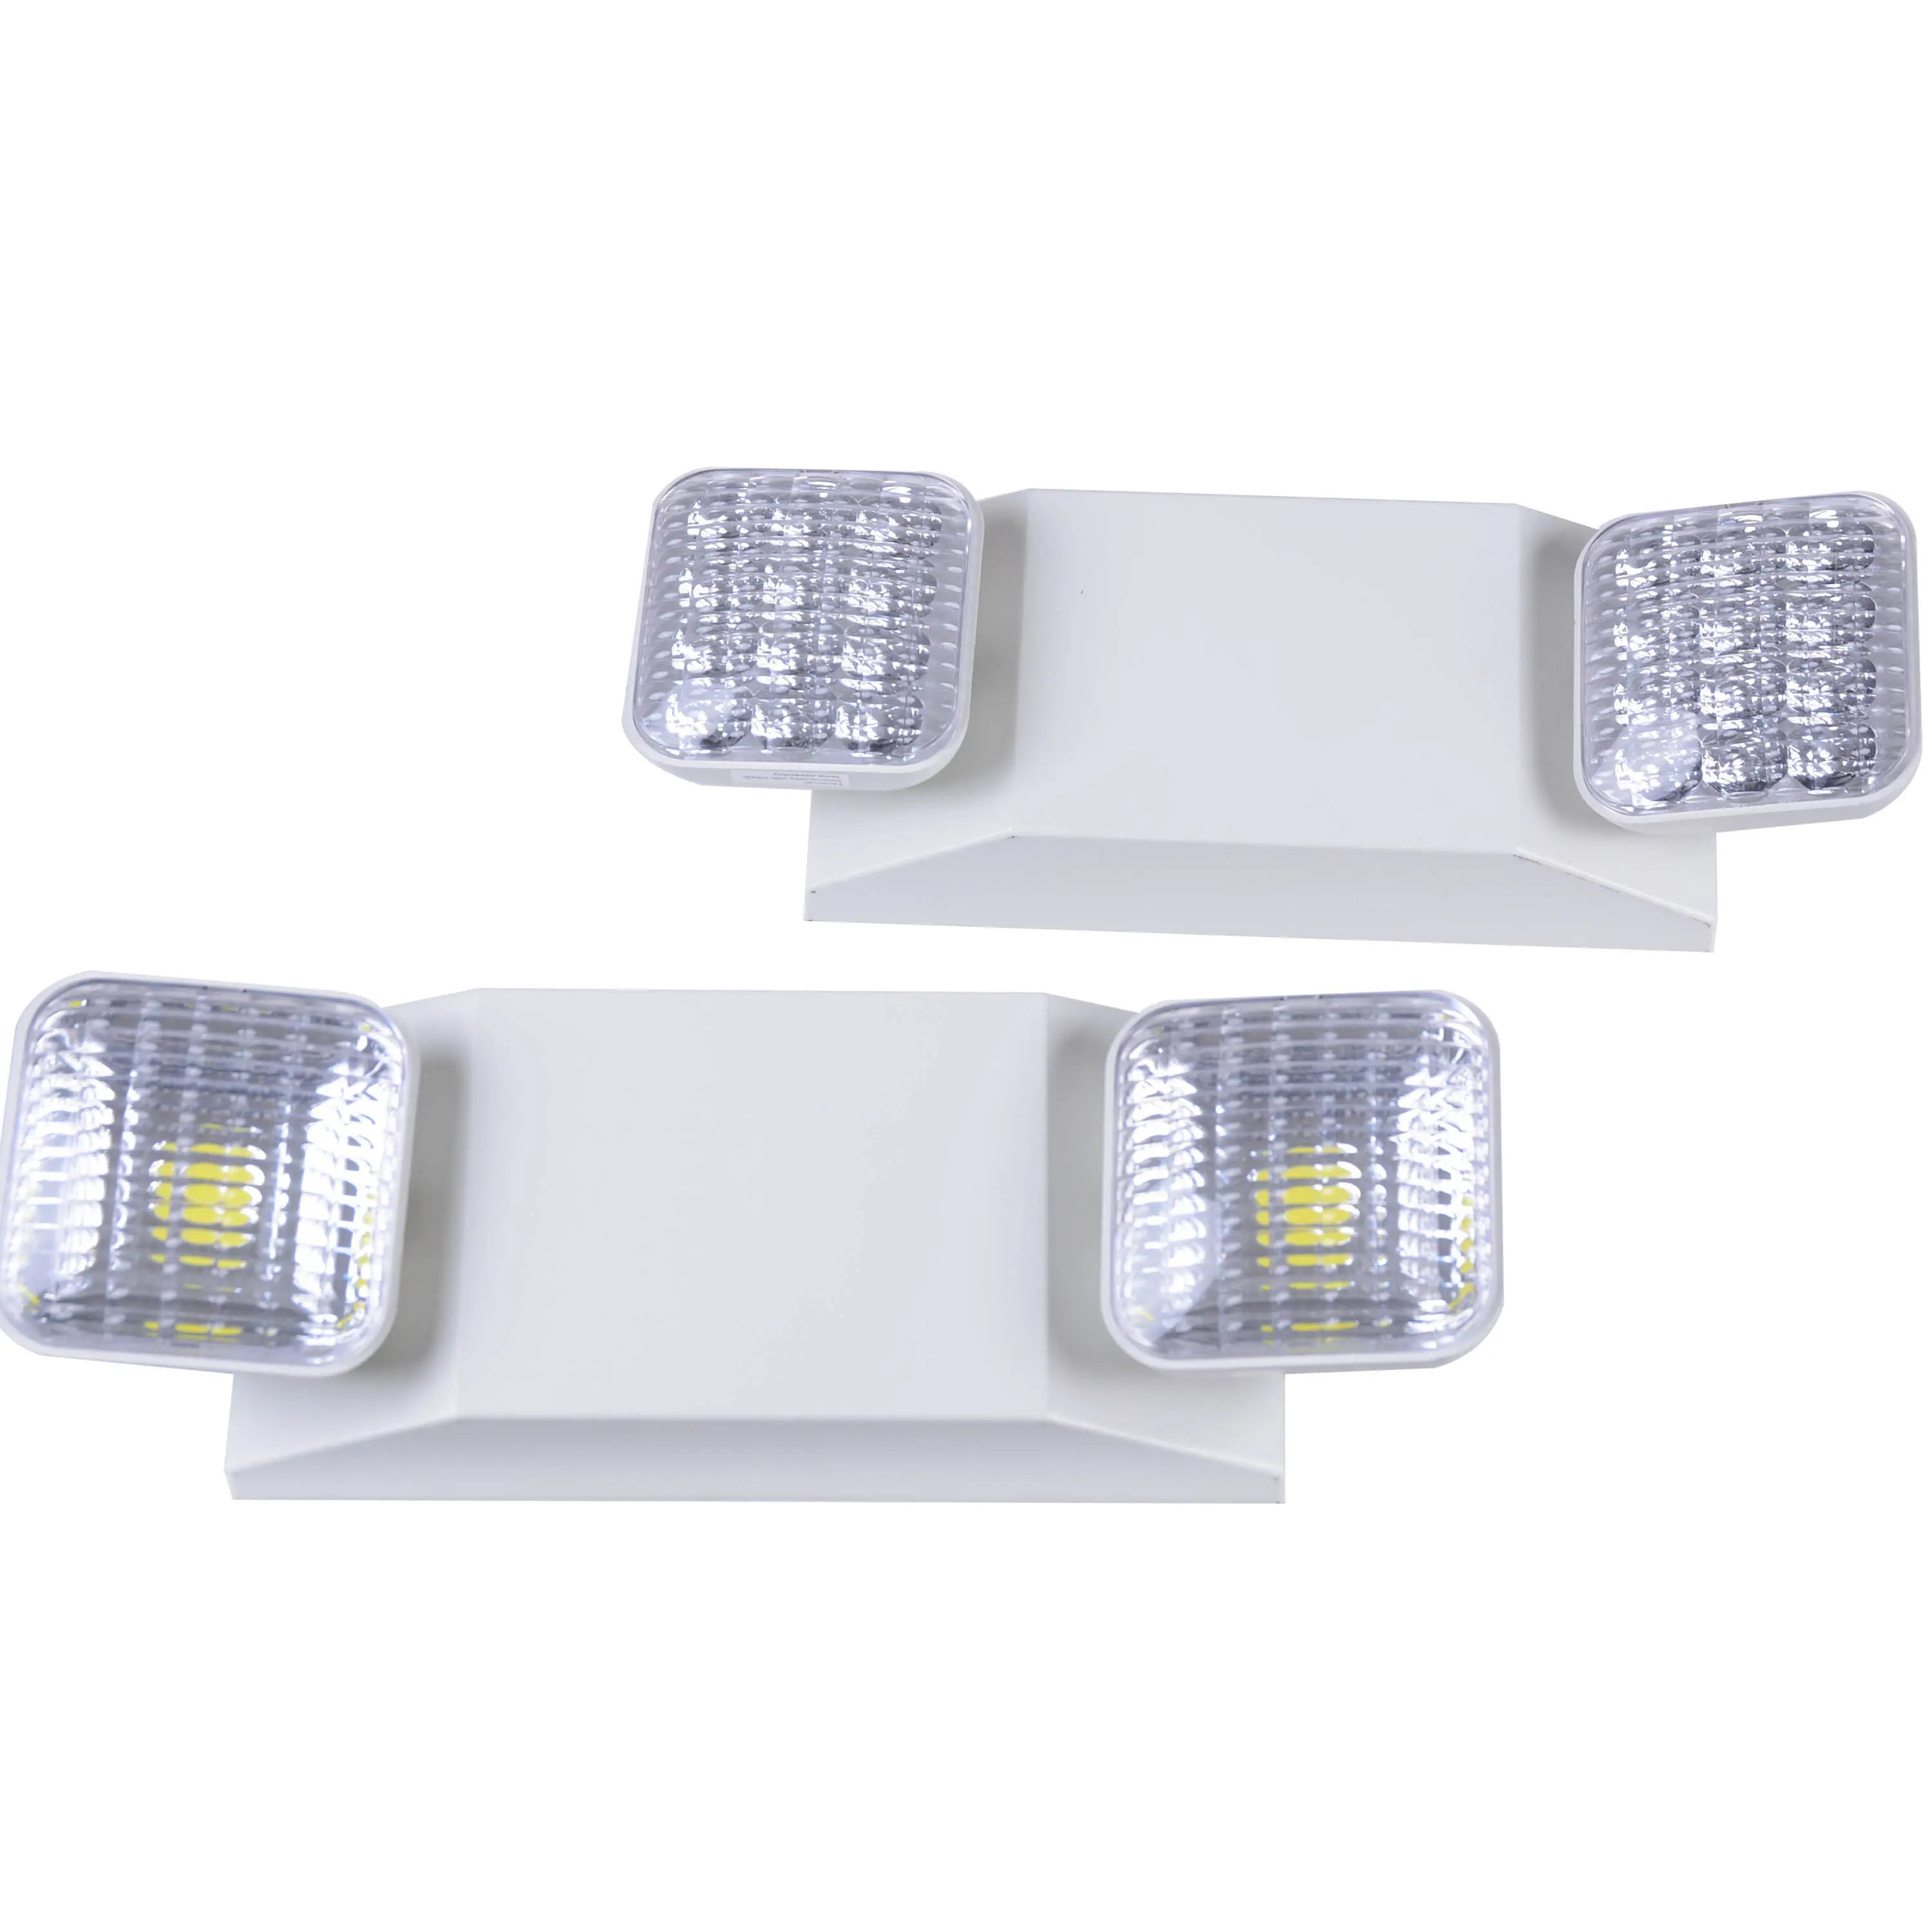 D'urgence LED Lumière lumière d'urgence à double tête avec UI énumérés led rechargeable éclairage de secours